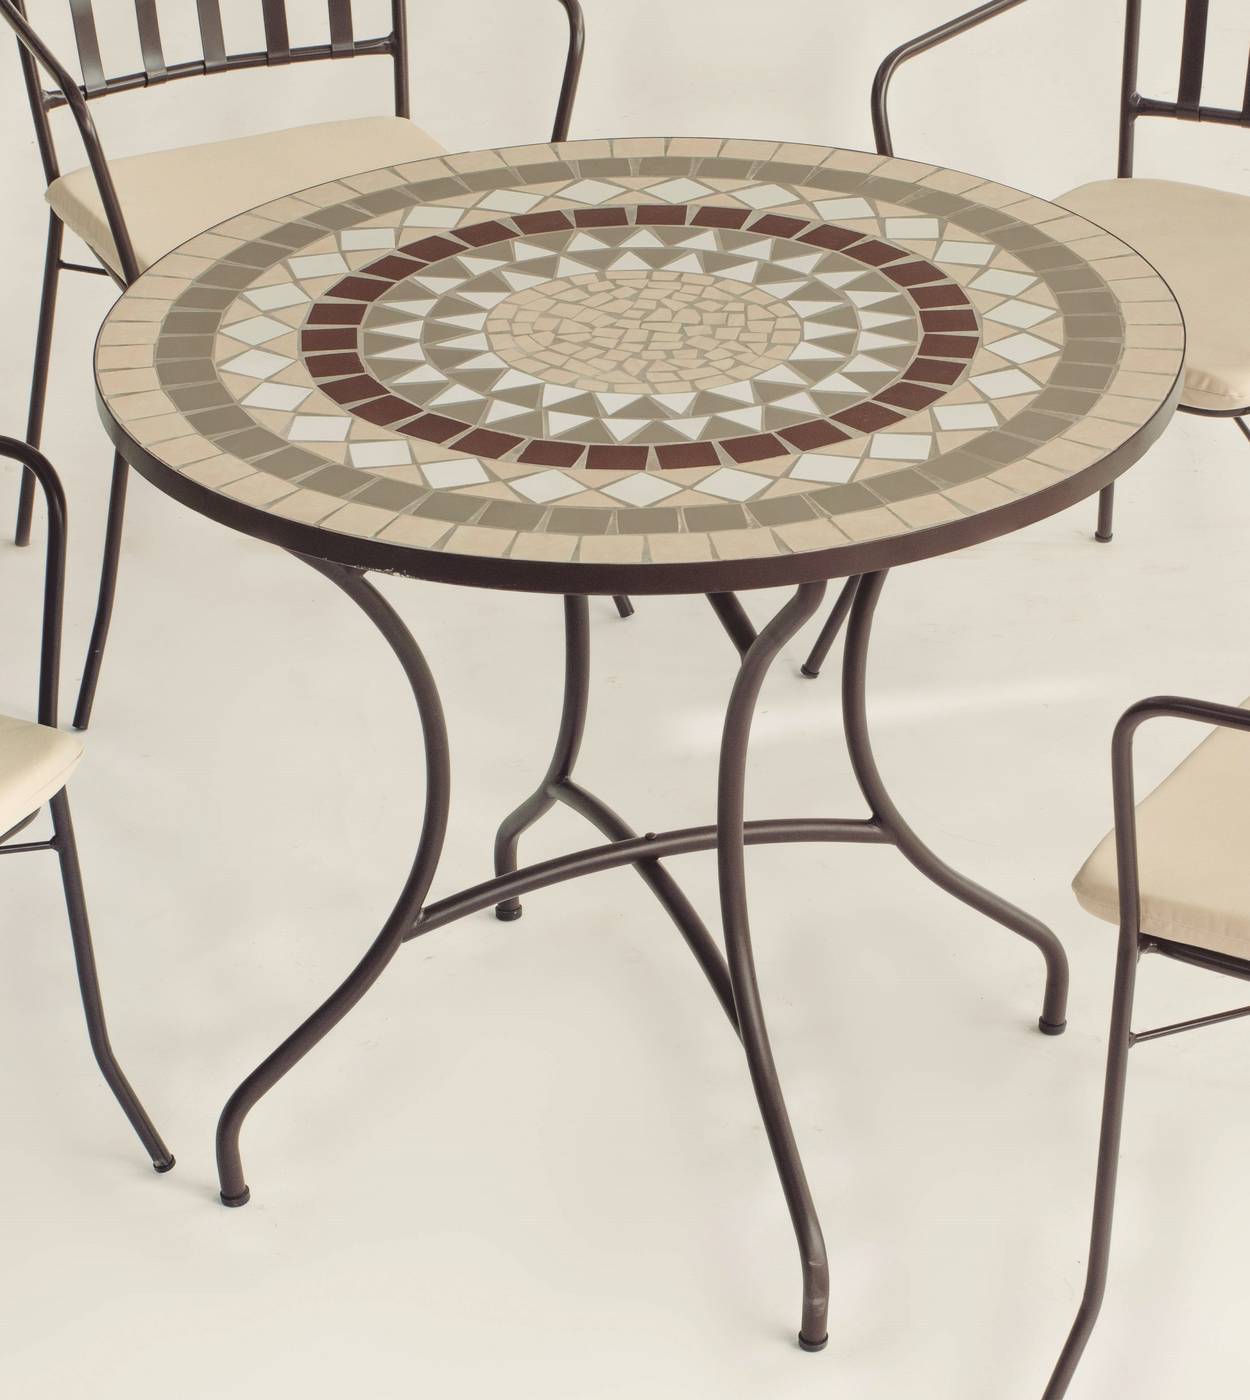 Mesa de acero forjado color bronce, con tablero mosaico circular de 90 cm.